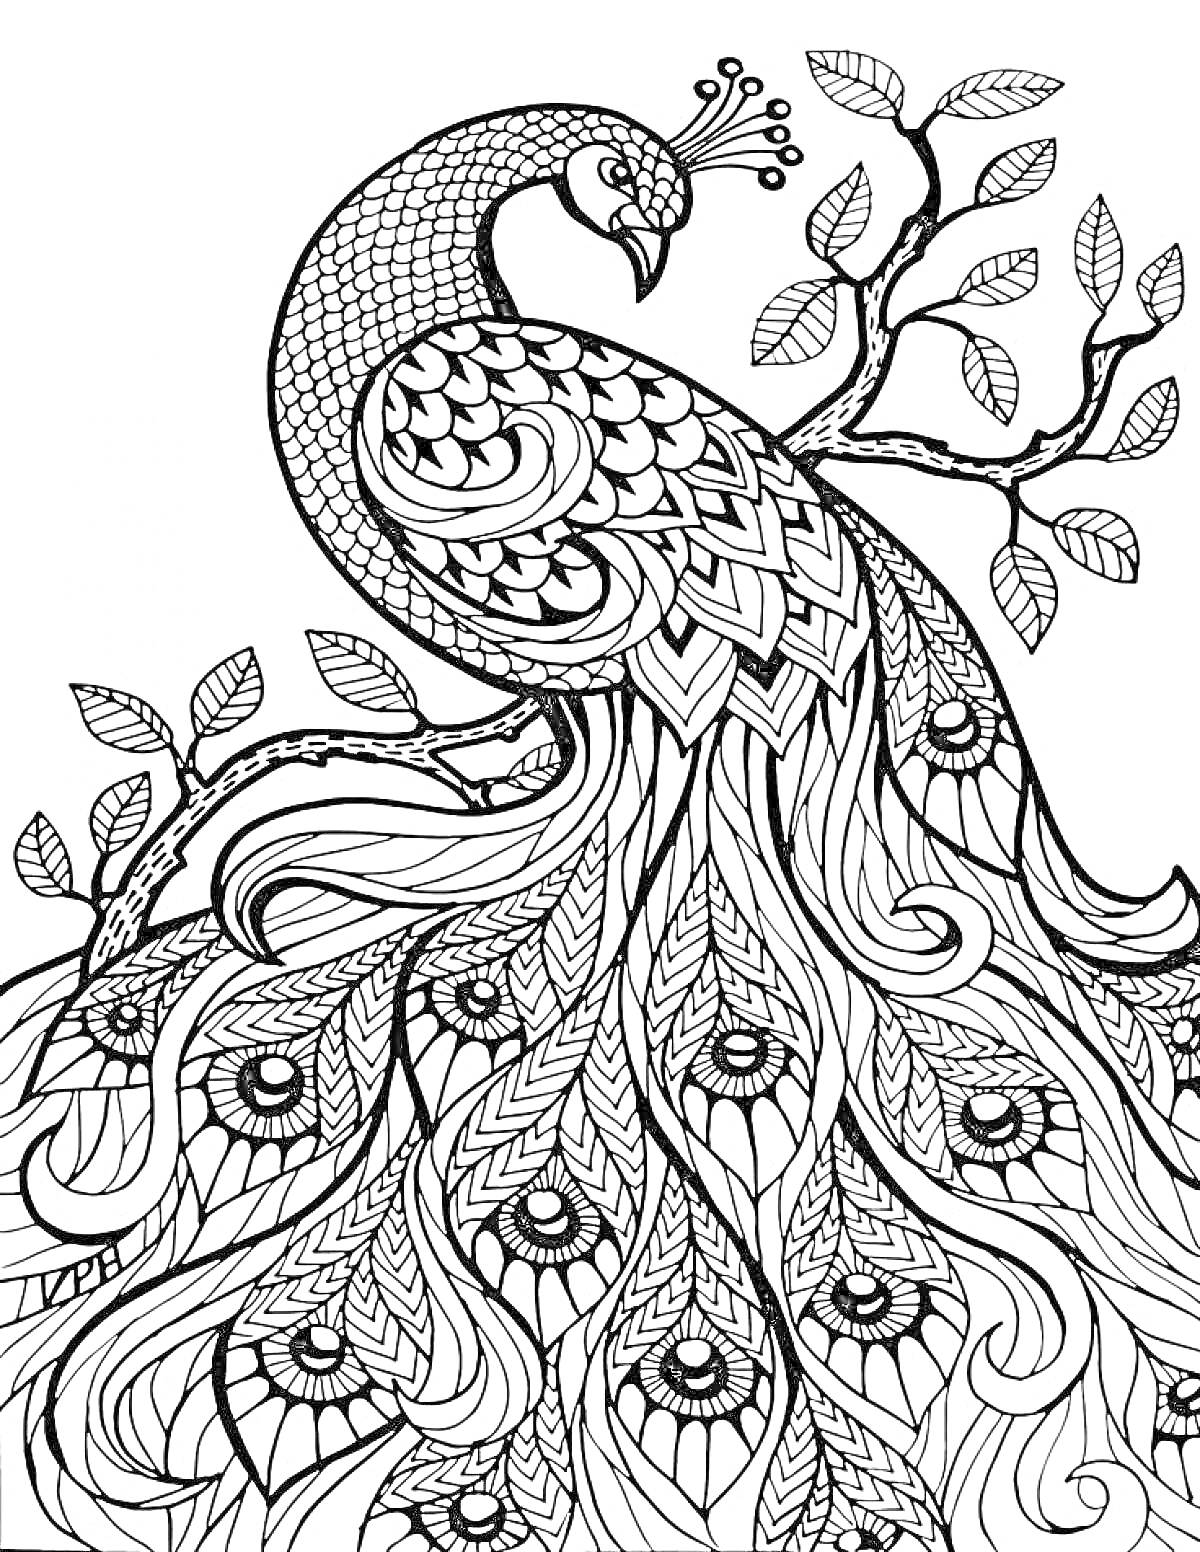 Раскраска Павлинин на ветви: павлин, ветка дерева с листьями, украшенные перья